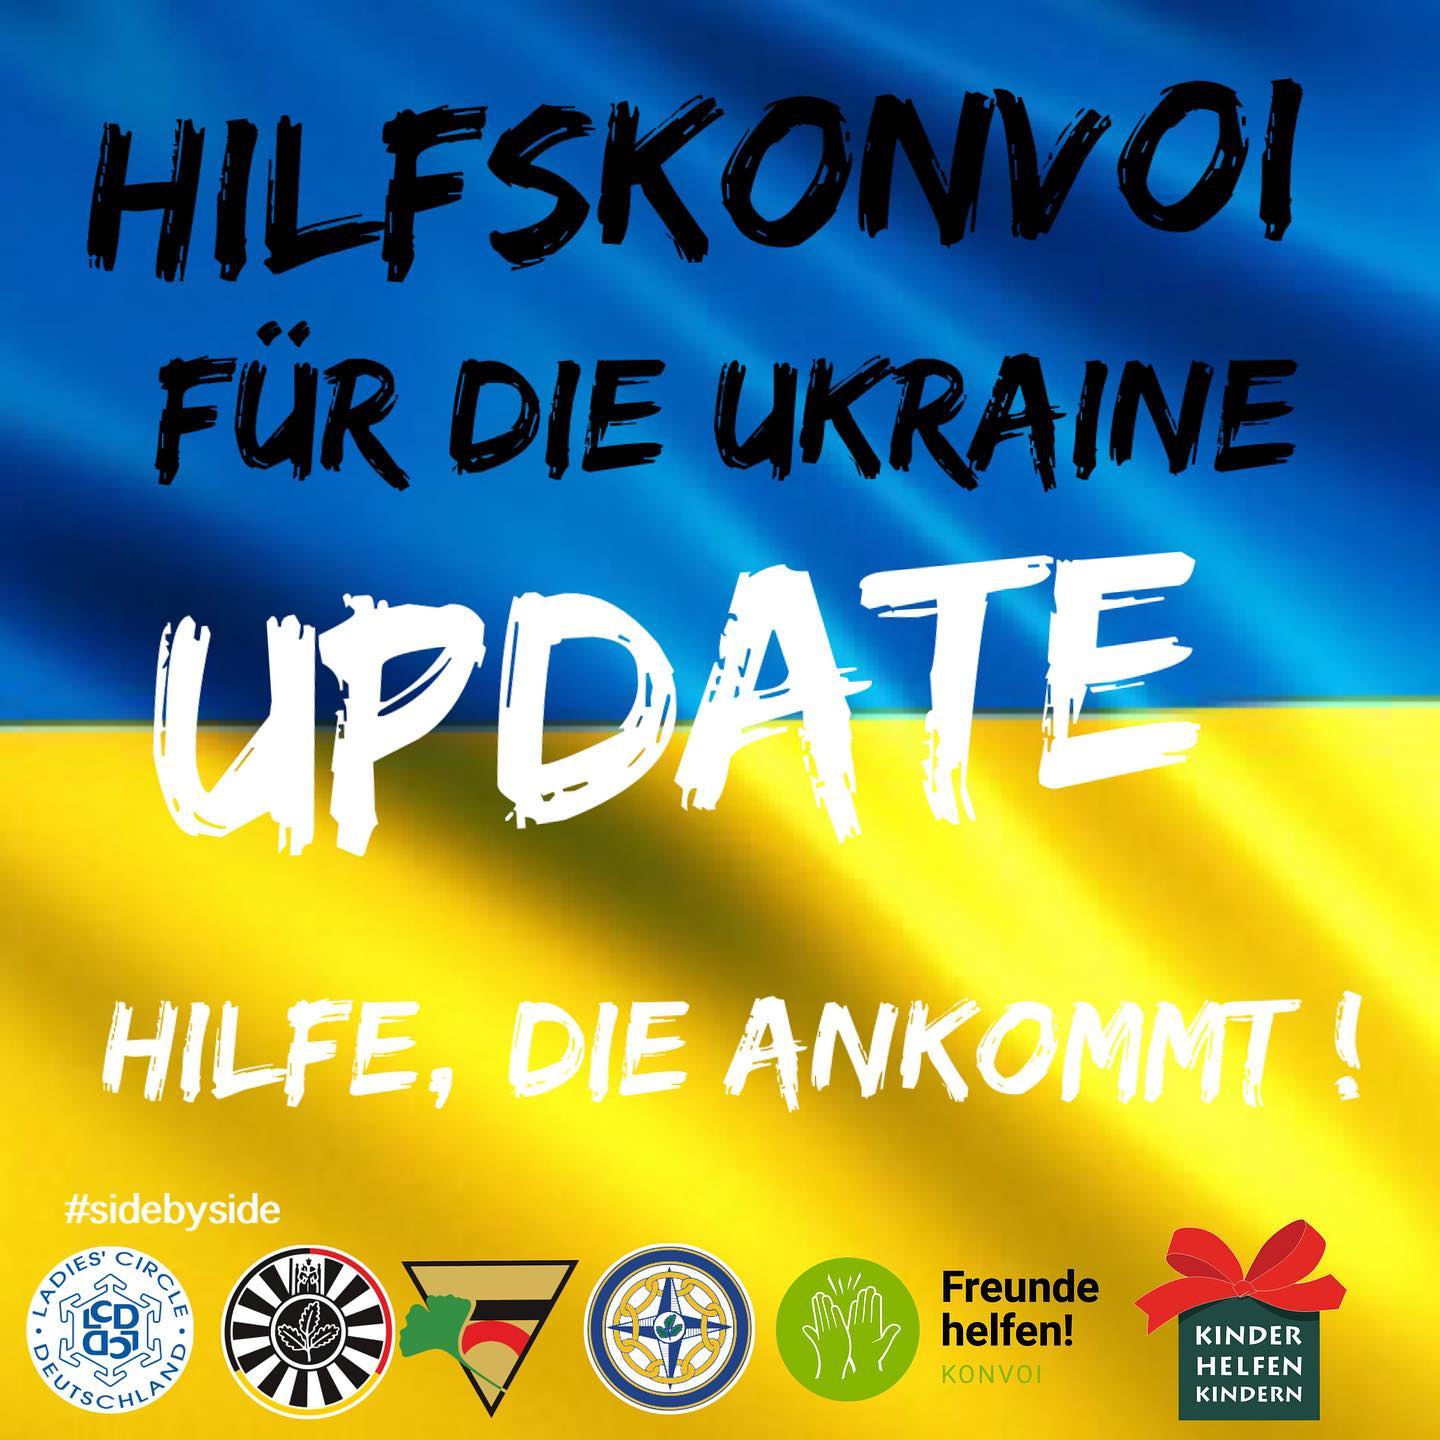 Hilfskonvoi für die Ukraine